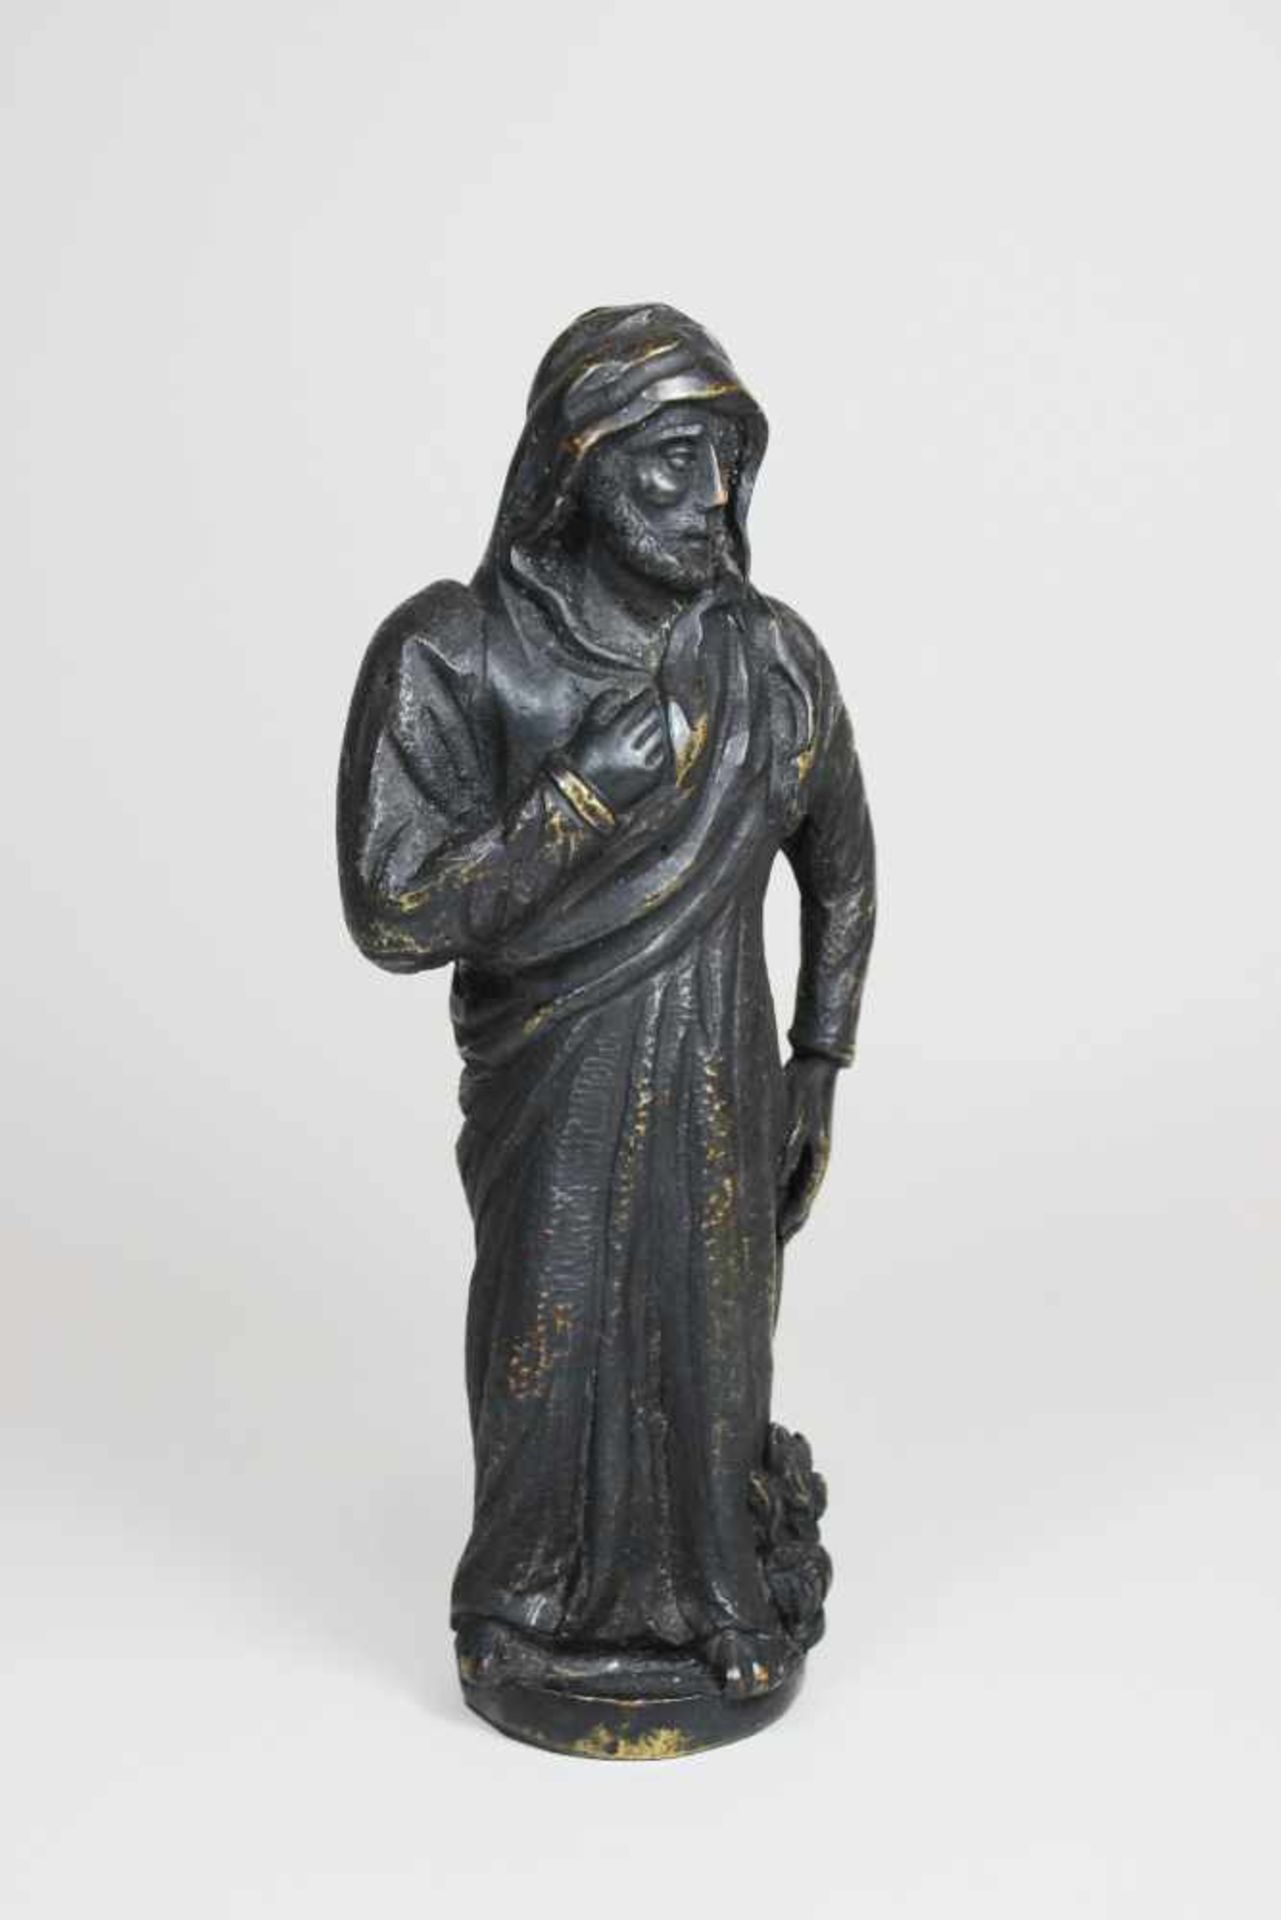 Figur eines älteren Mannes im Gewand, Bronze, dunkle Patina. H.: 19 cm.